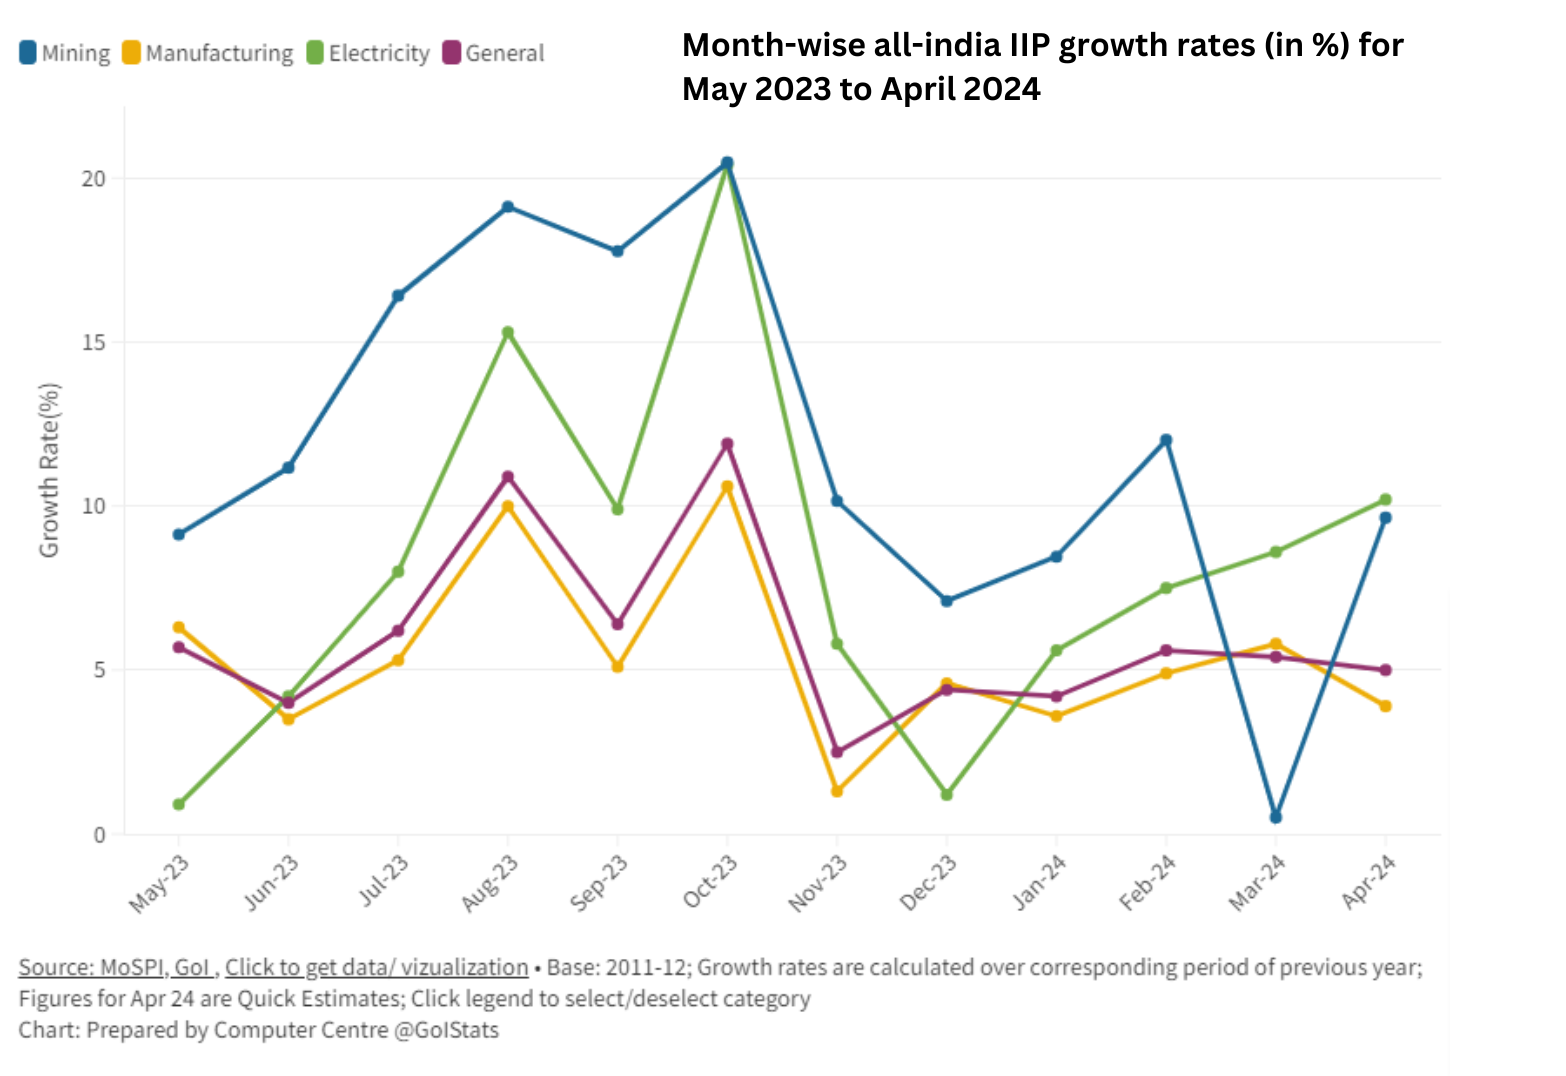 Growth rate as per IIP